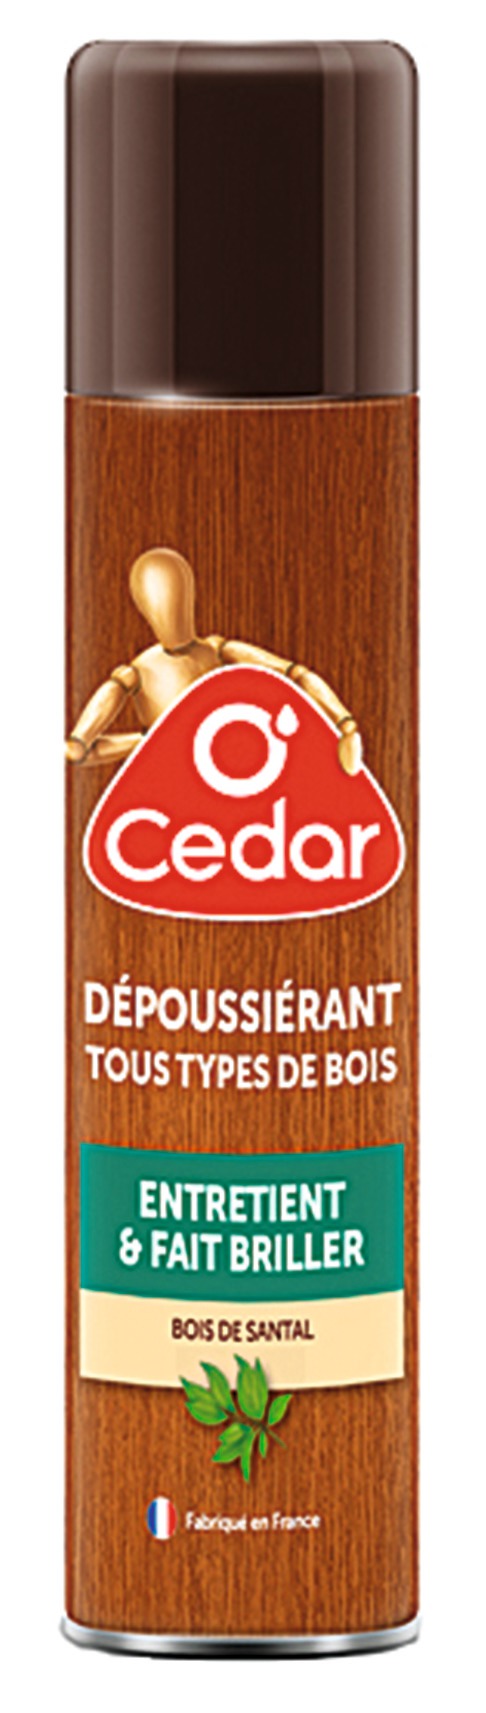 Dépoussiérant tous type de bois O’Cedar - Aérosol 300 ml